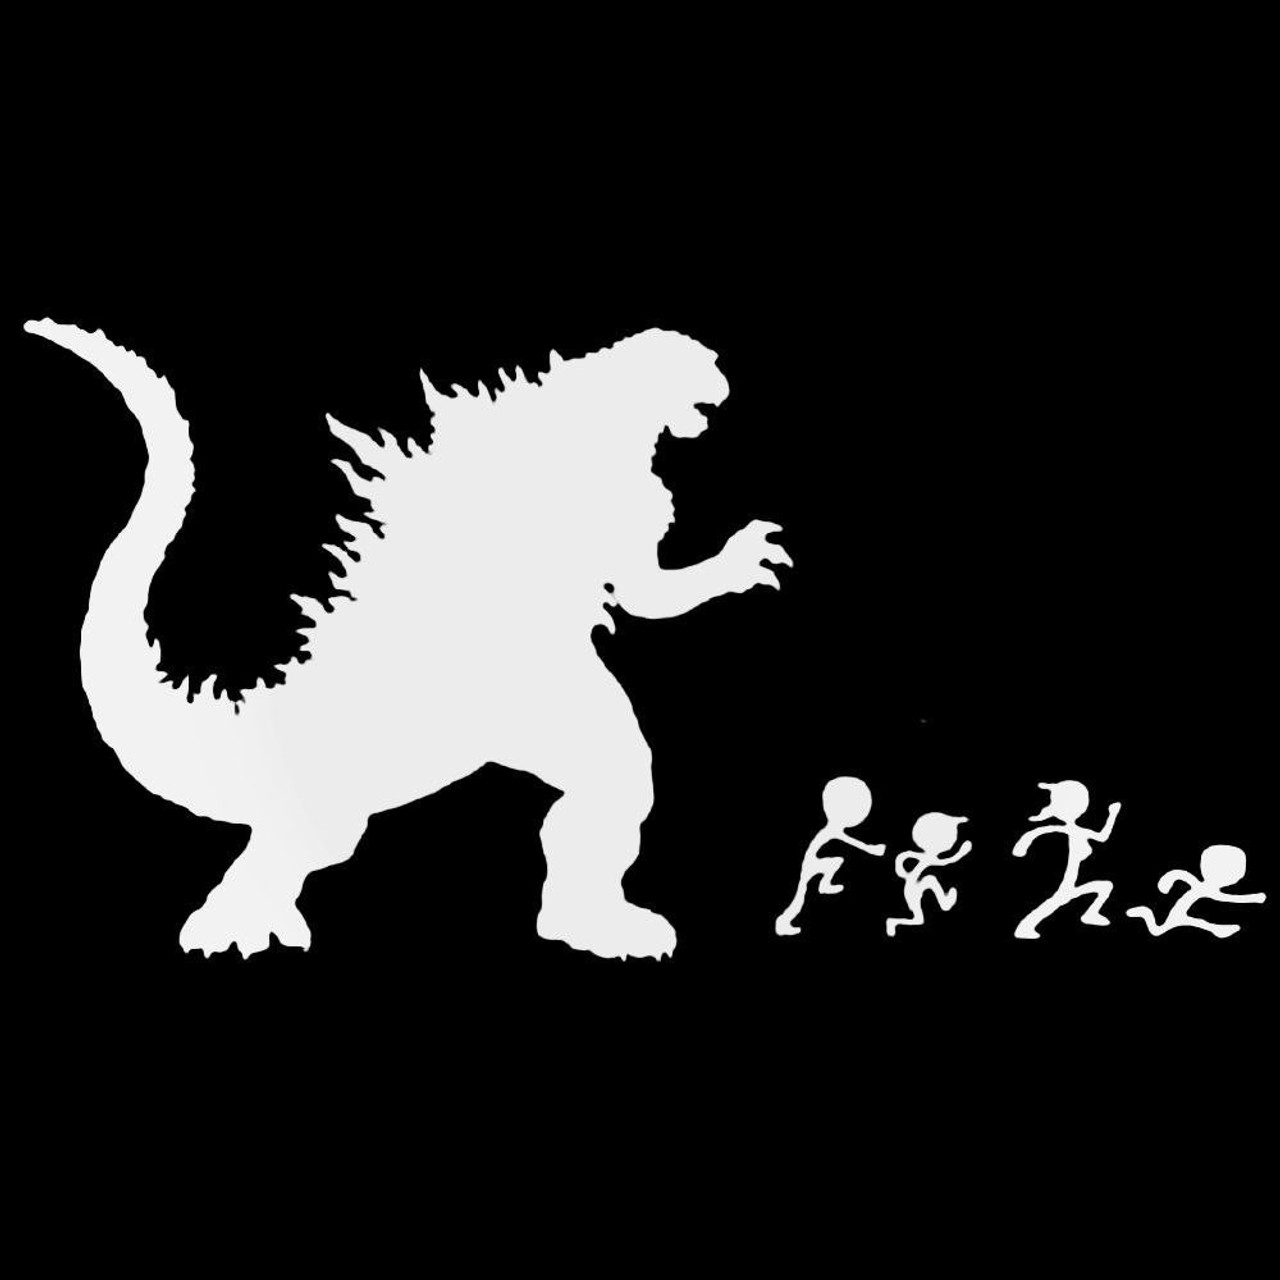 Godzilla Sticker by Original_Wicked